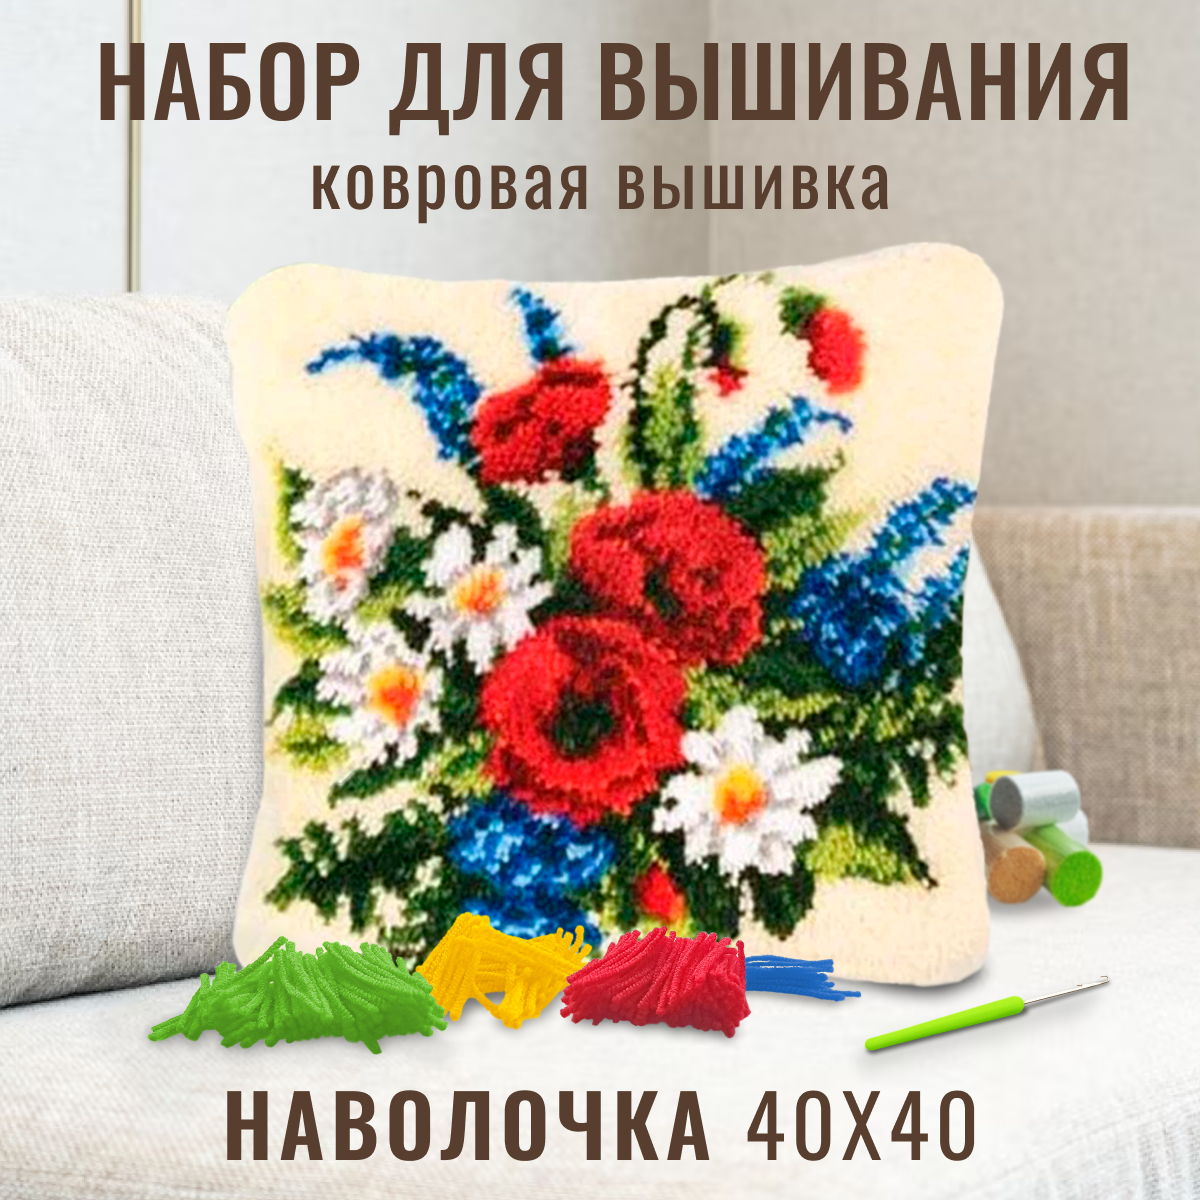 Ковровая вышивка набор для вышивания подушки размером 40х40 см ZD-1021 Красибвый букет